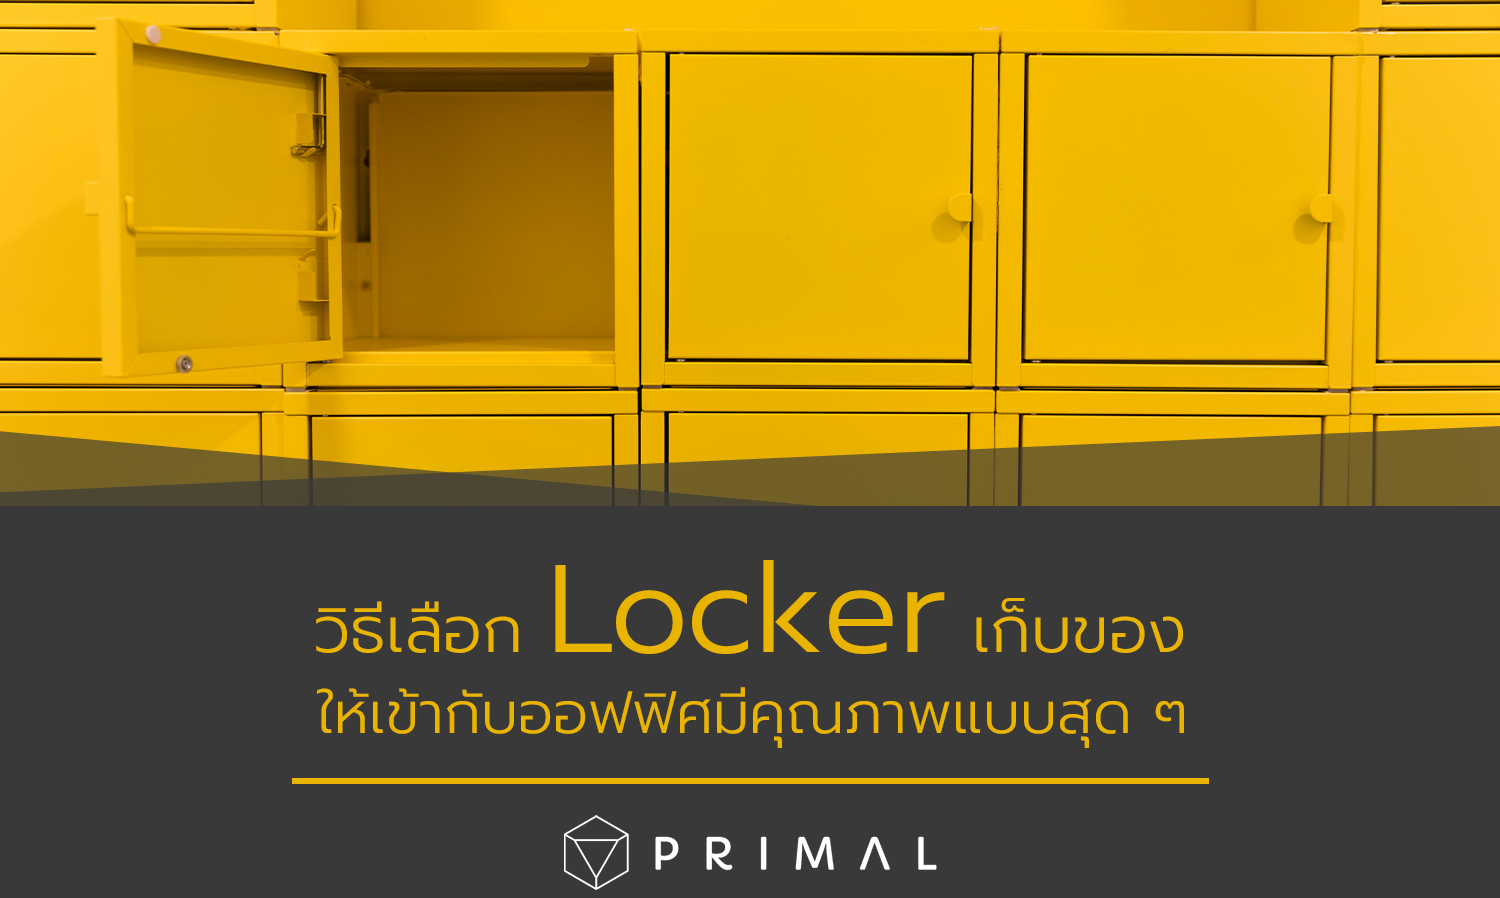 วิธีเลือก Locker เก็บของให้เข้ากับออฟฟิศมีคุณภาพแบบสุด ๆ